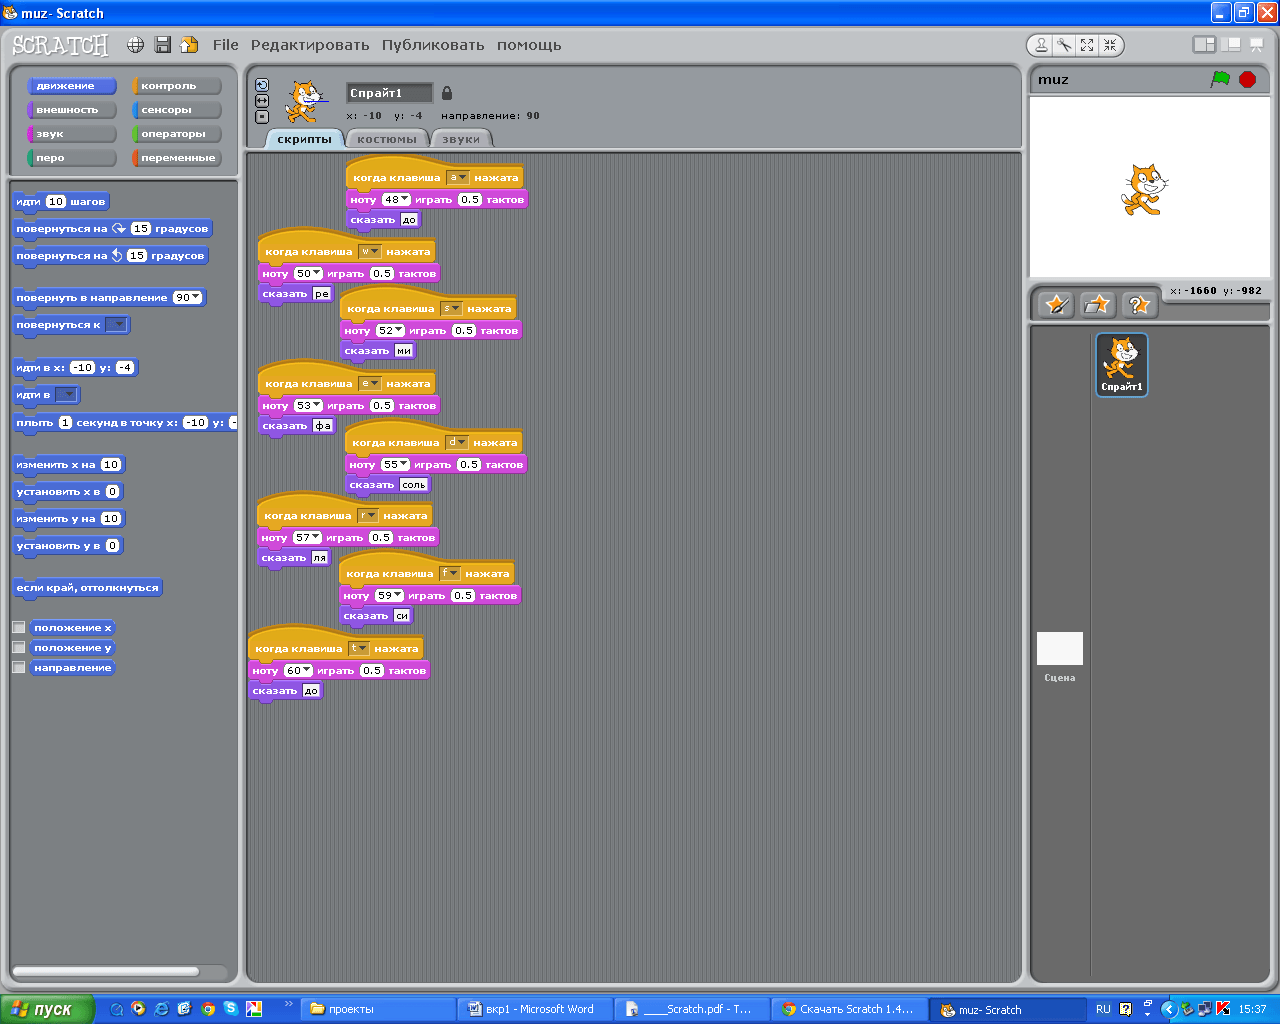 Первые шаги в Scratch - Уроки в Scratch